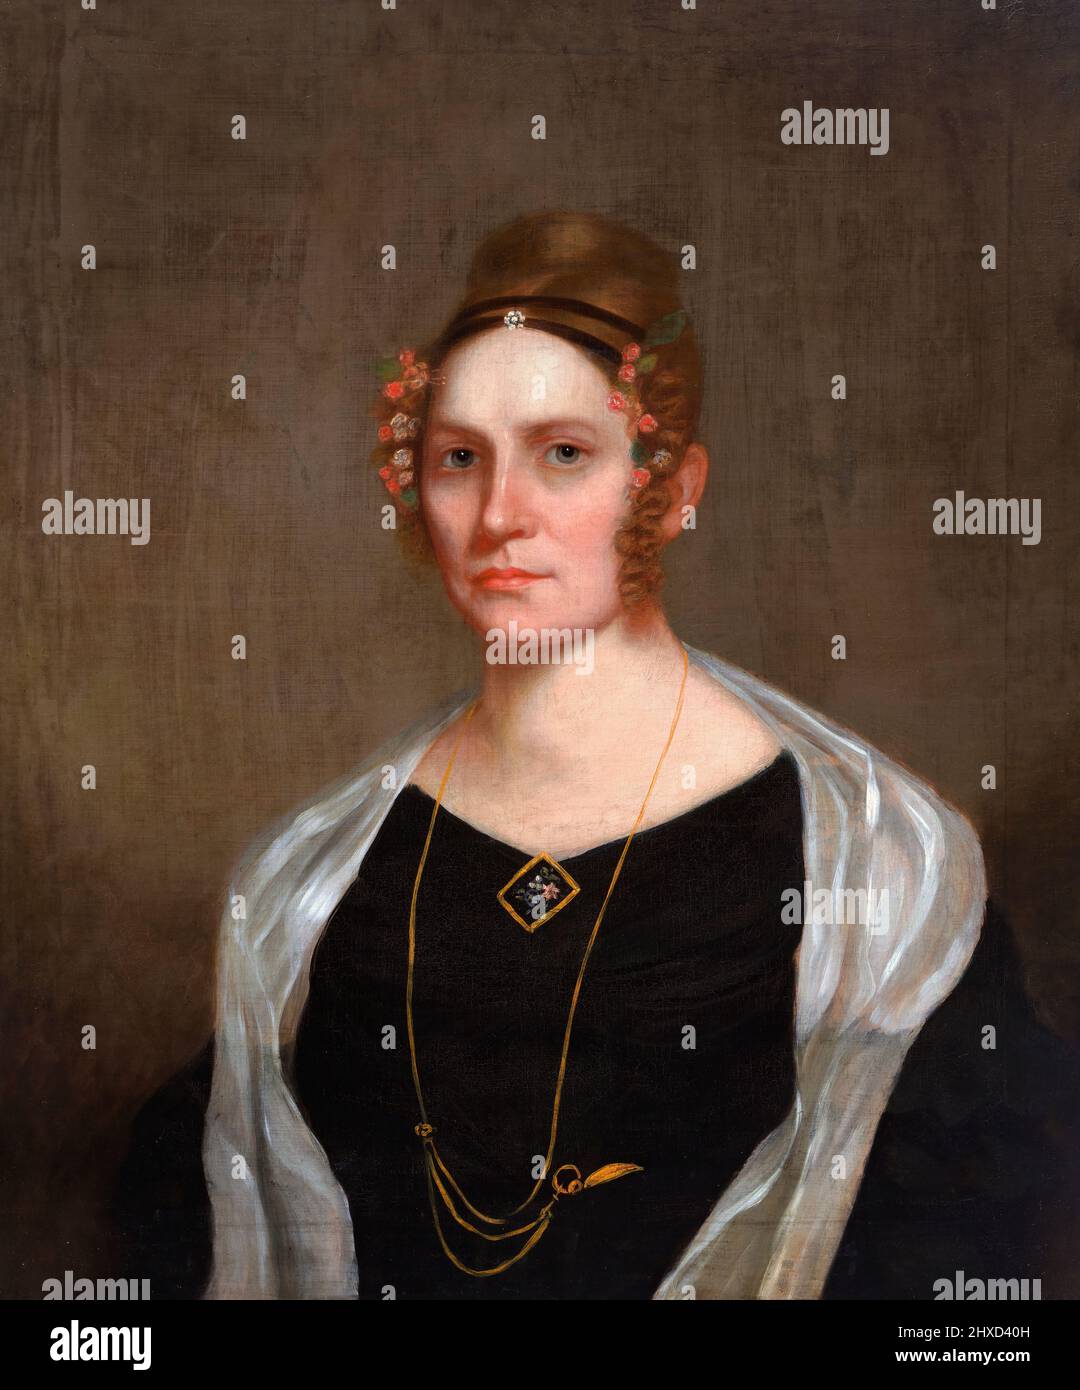 Portrait de l'ancienne première dame et épouse de Millard Fillmore, Abigail Fillmore (née Powers; 1798-1853), huile sur toile, c. 1840 Banque D'Images